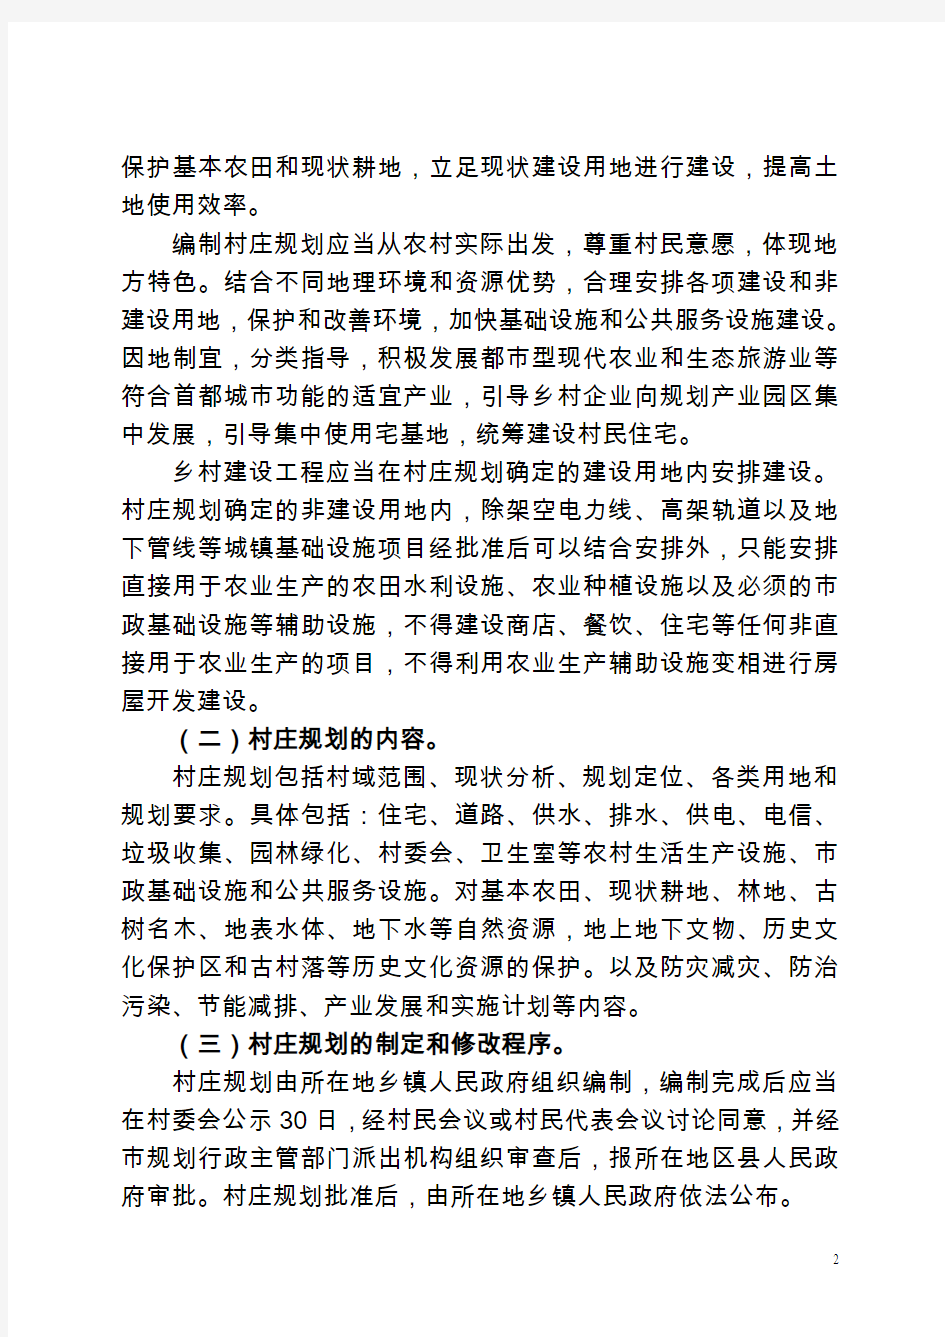 北京村庄规划建设管理指导意见